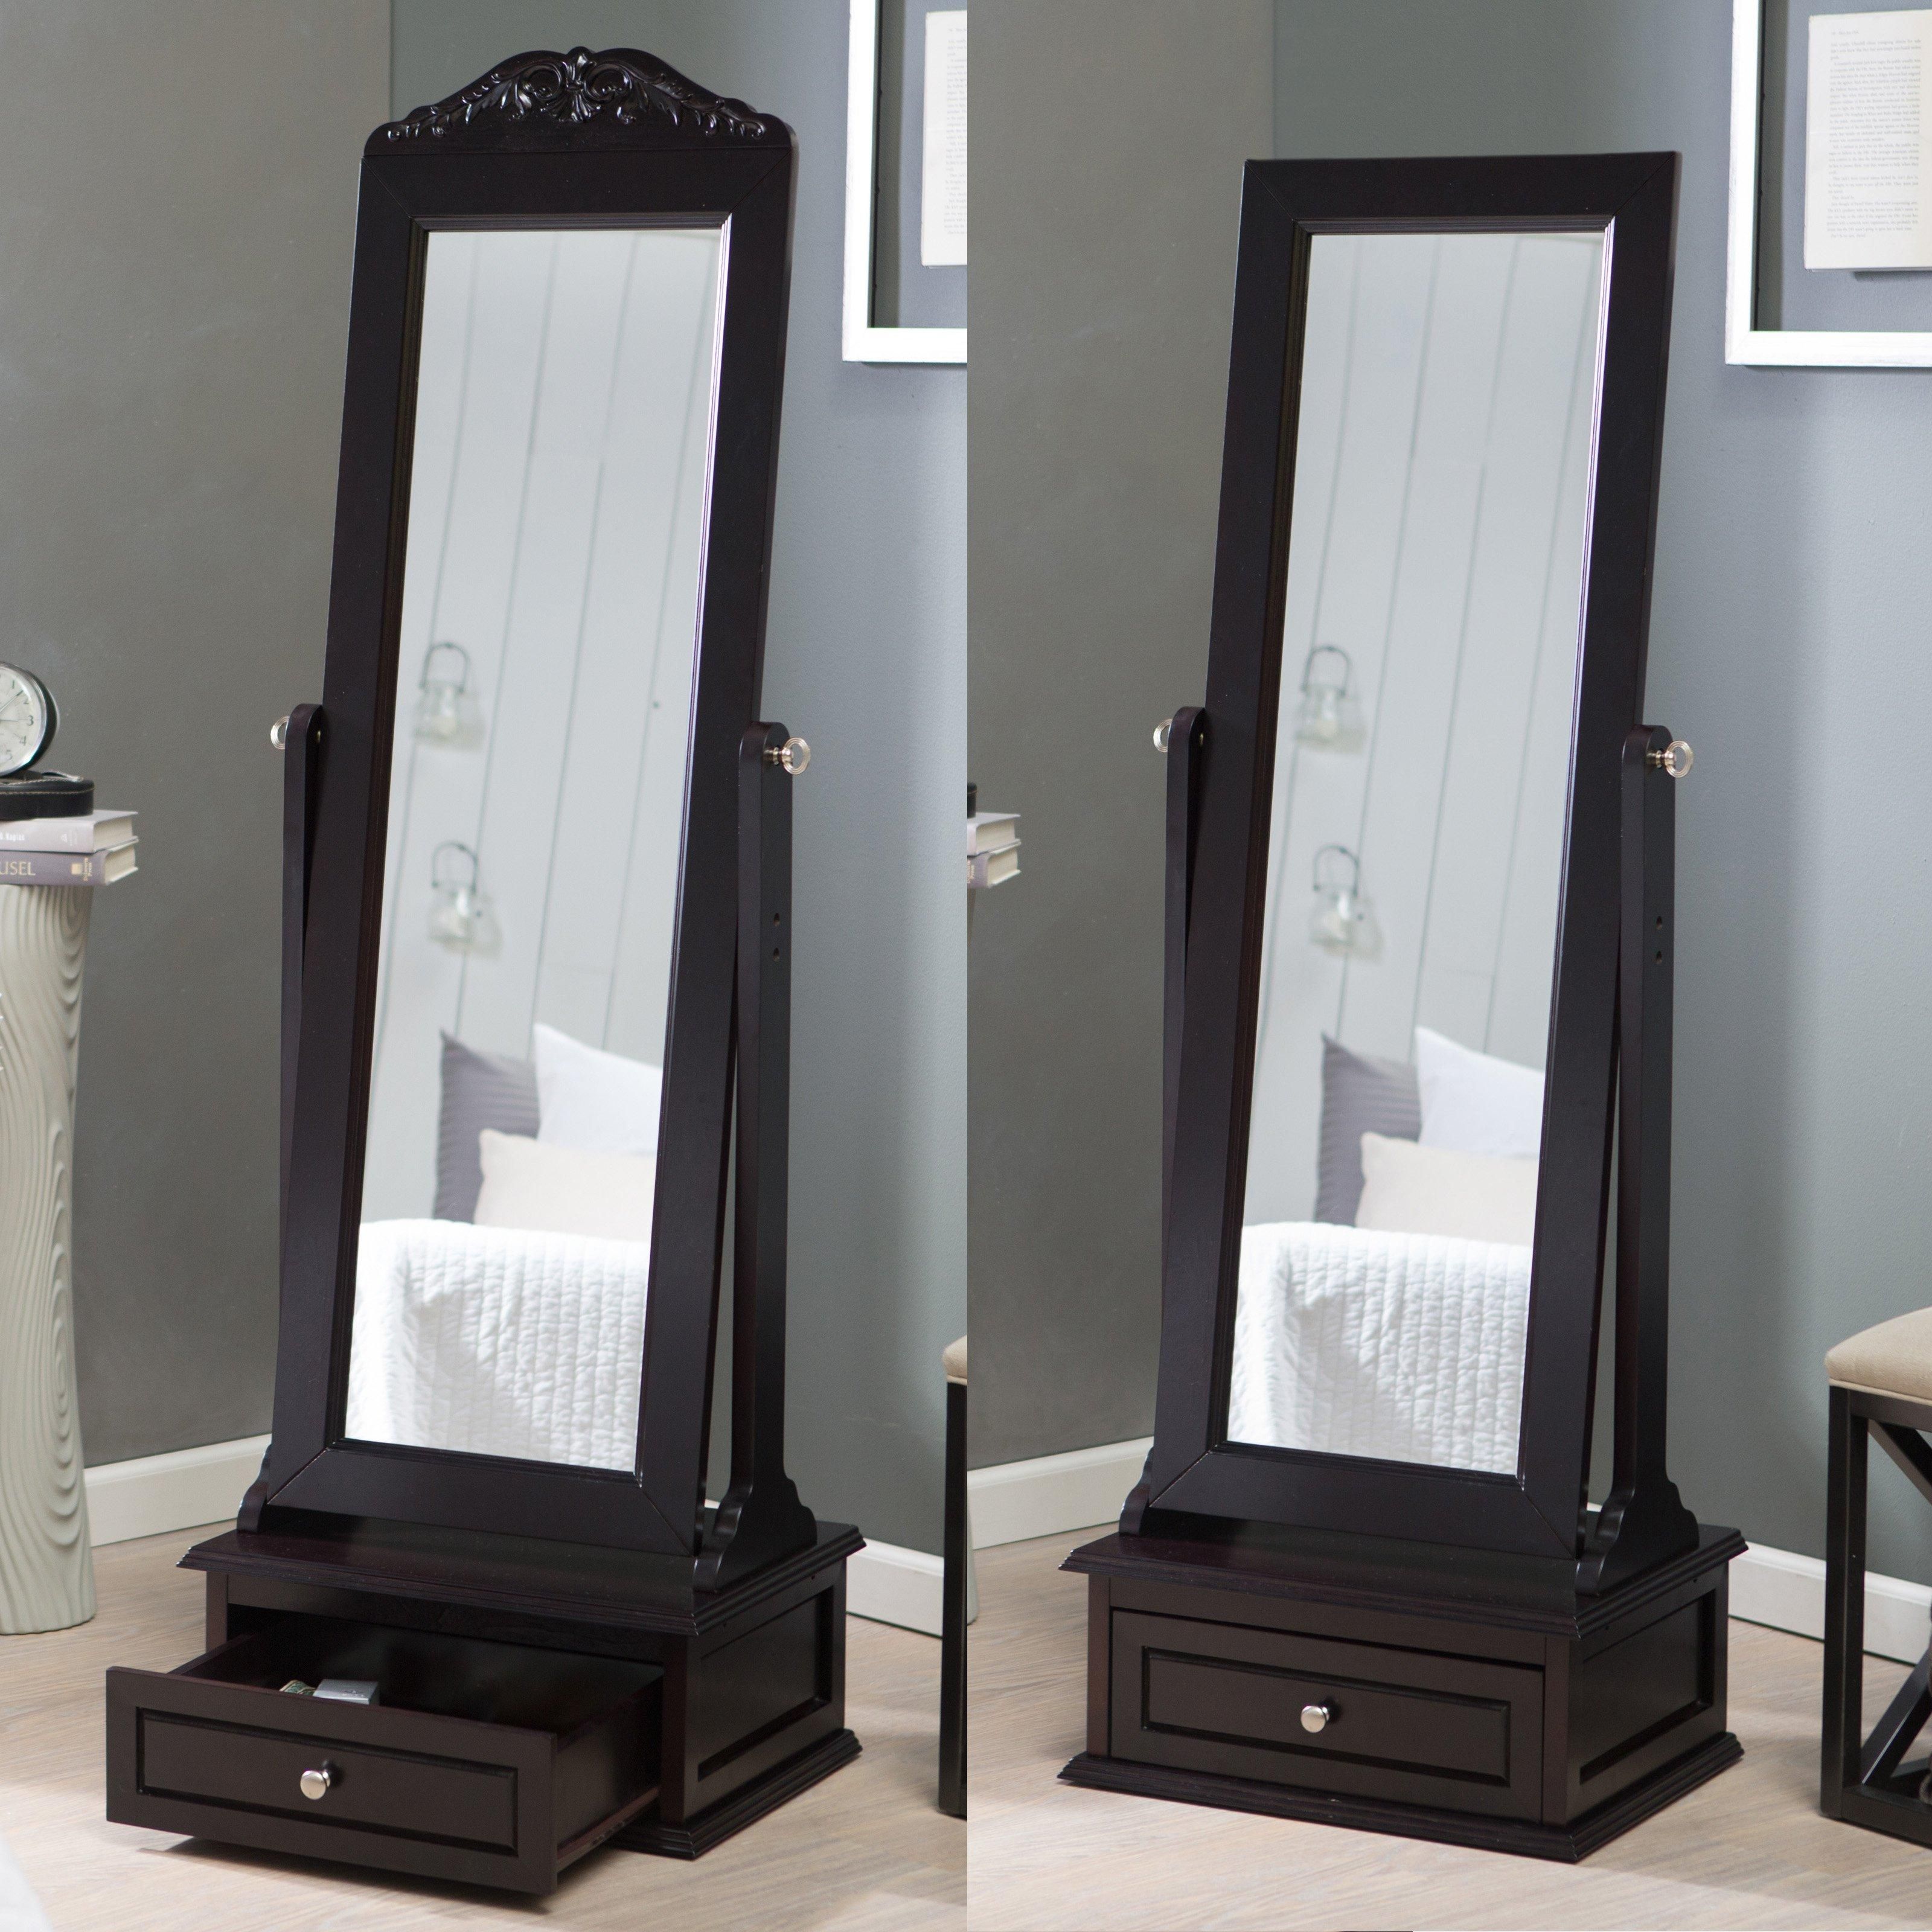 High Gloss White Full Length Cheval Floor Mirror – 18W X 64H In Within Full Length Cheval Mirror (View 19 of 20)